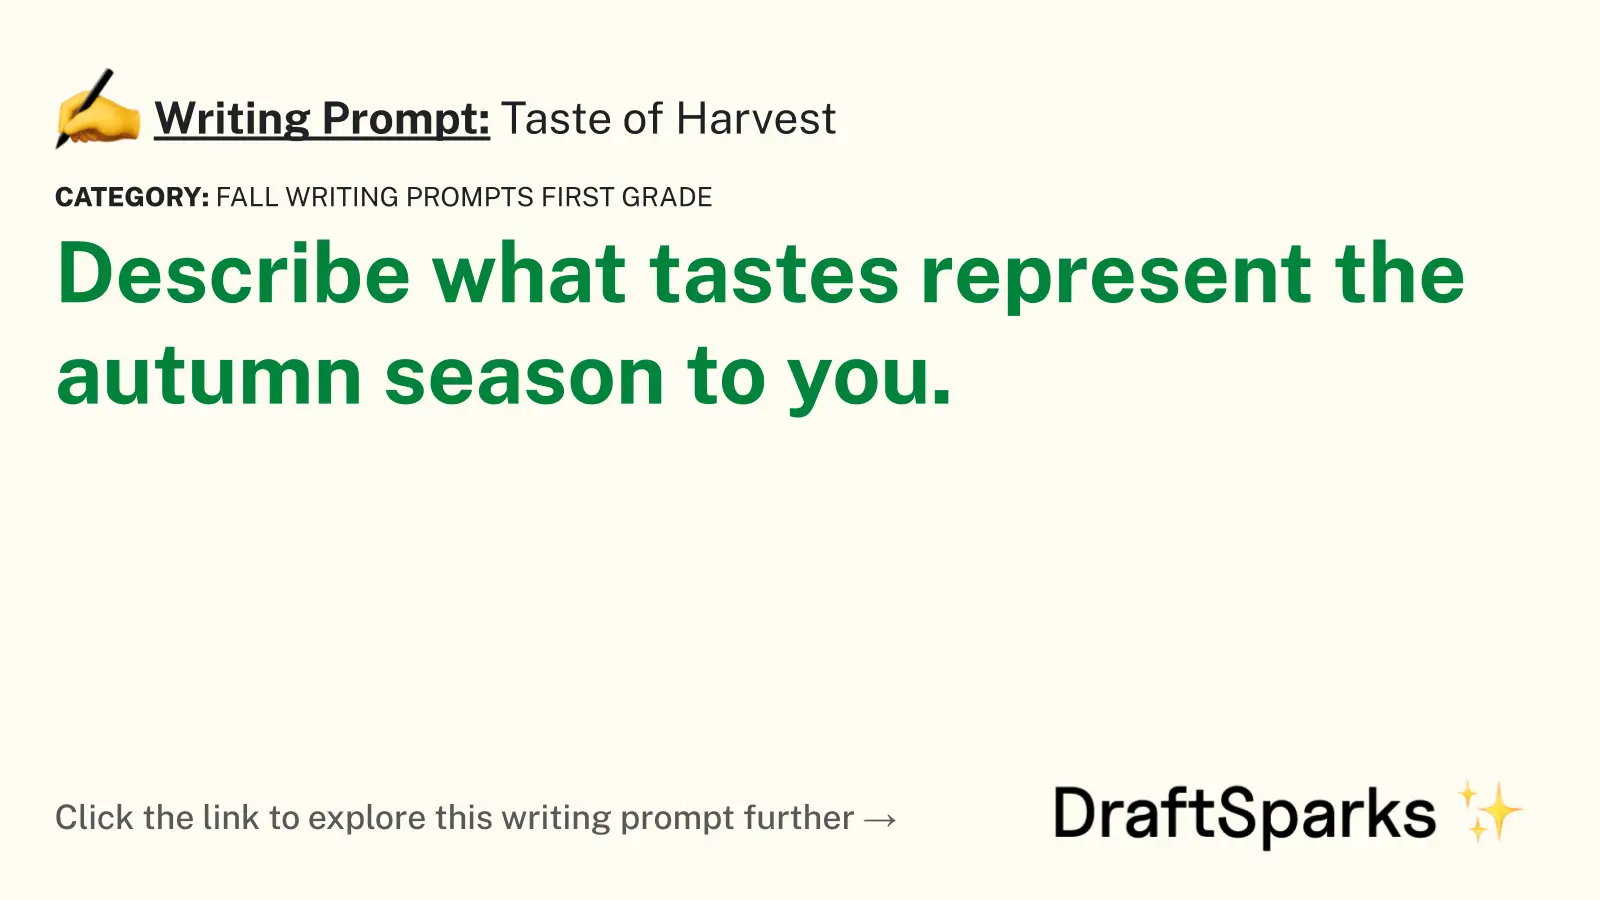 Taste of Harvest